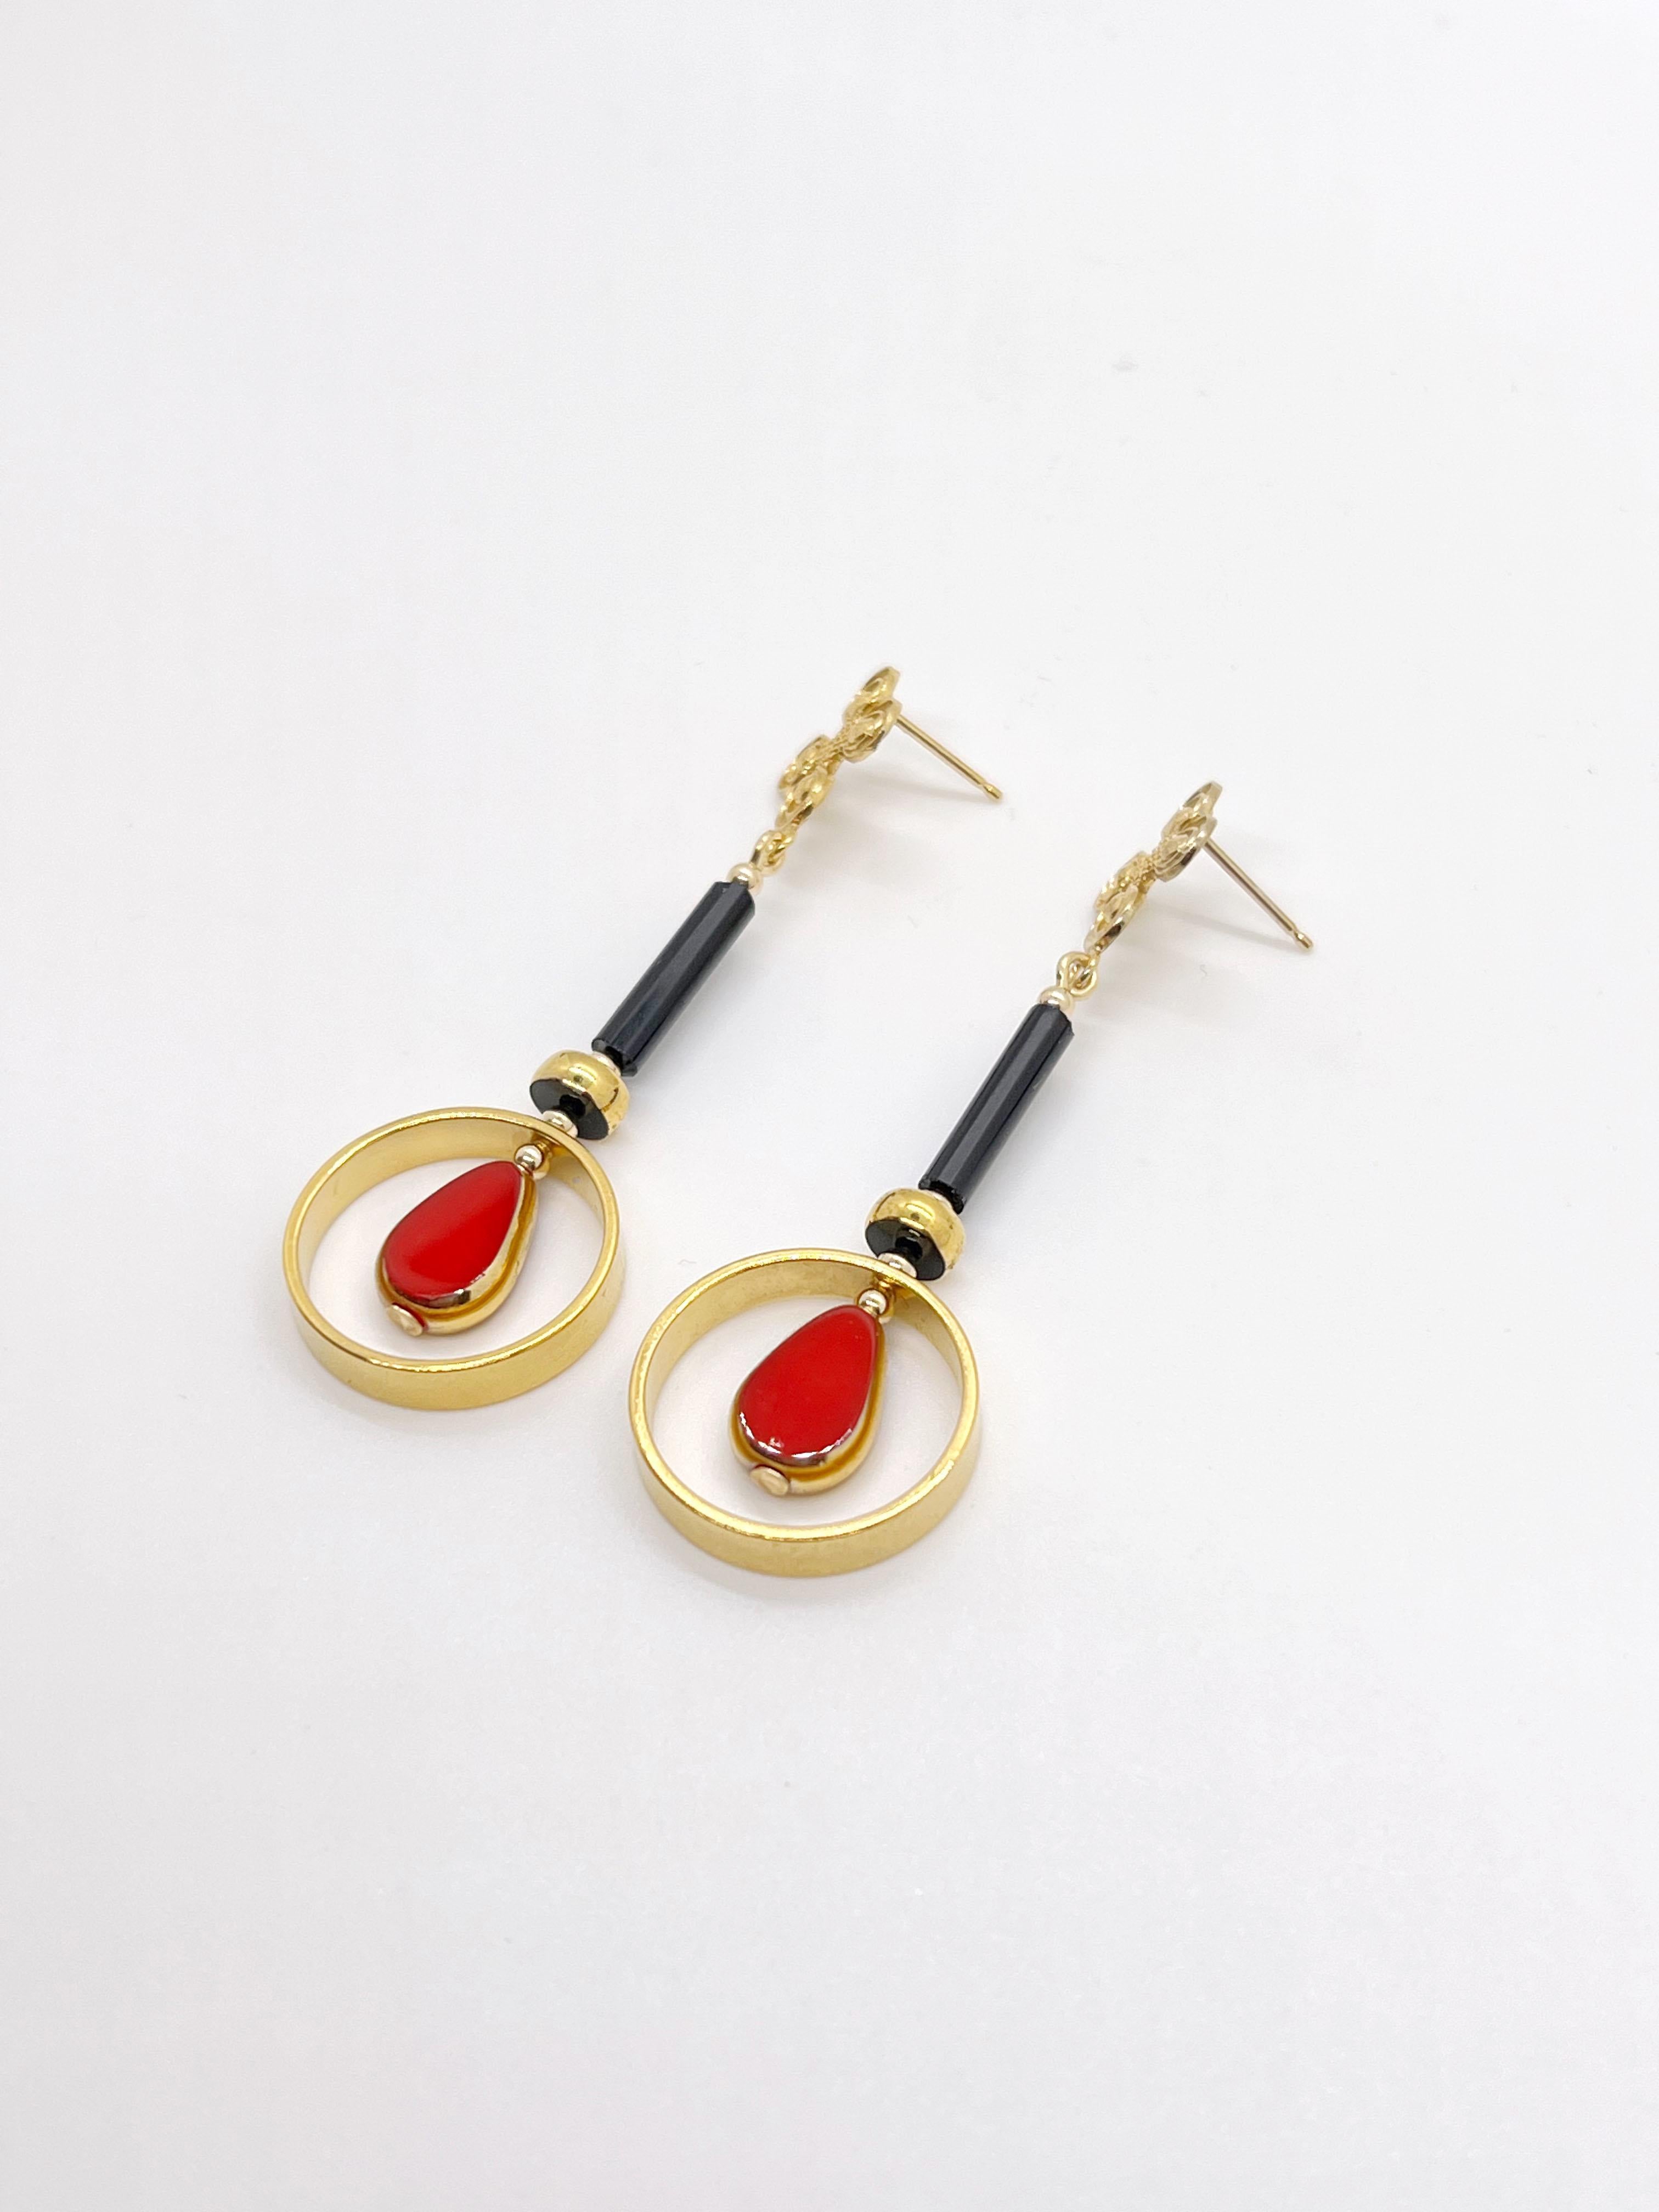 Rote Teardrop Perlen aus deutschem Glas mit Goldrand, Messing mit 24K Gold überzogen,  schwarze Glasperle, goldgefüllte Schmuckstücke und Ohrnadel. 

Die deutschen Vintage-Glasperlen gelten als selten und sammelwürdig, ca. 1920er-1960er